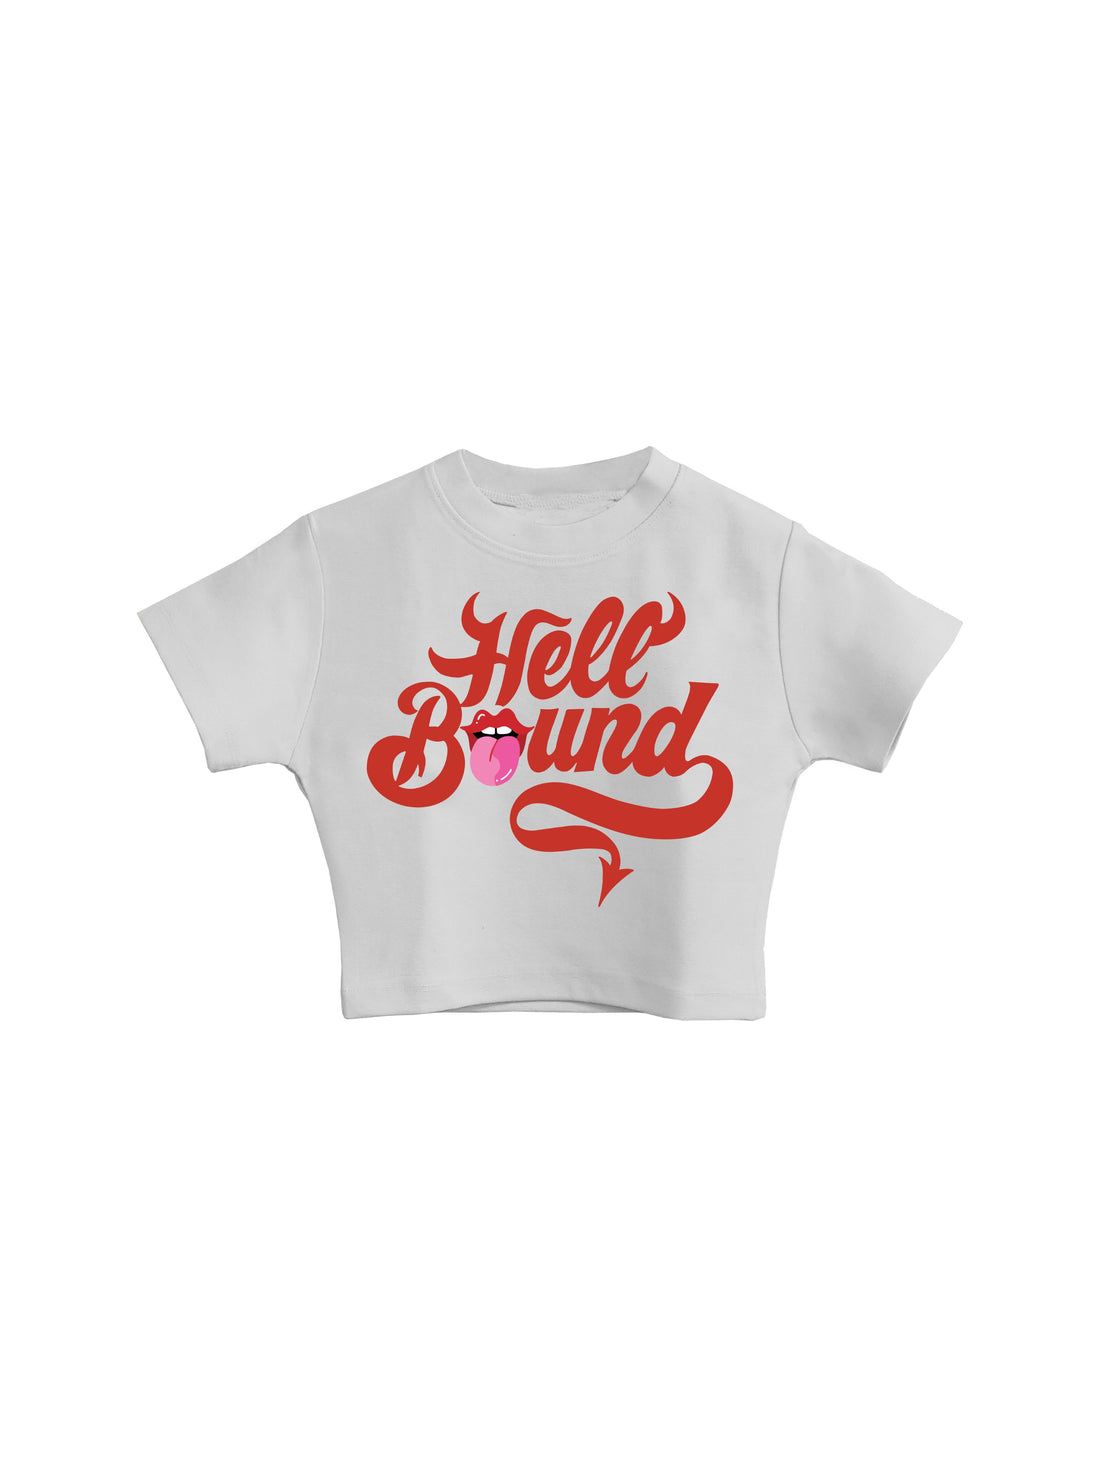 Hell Bound - Burger Bae Round Neck Crop Baby Tee